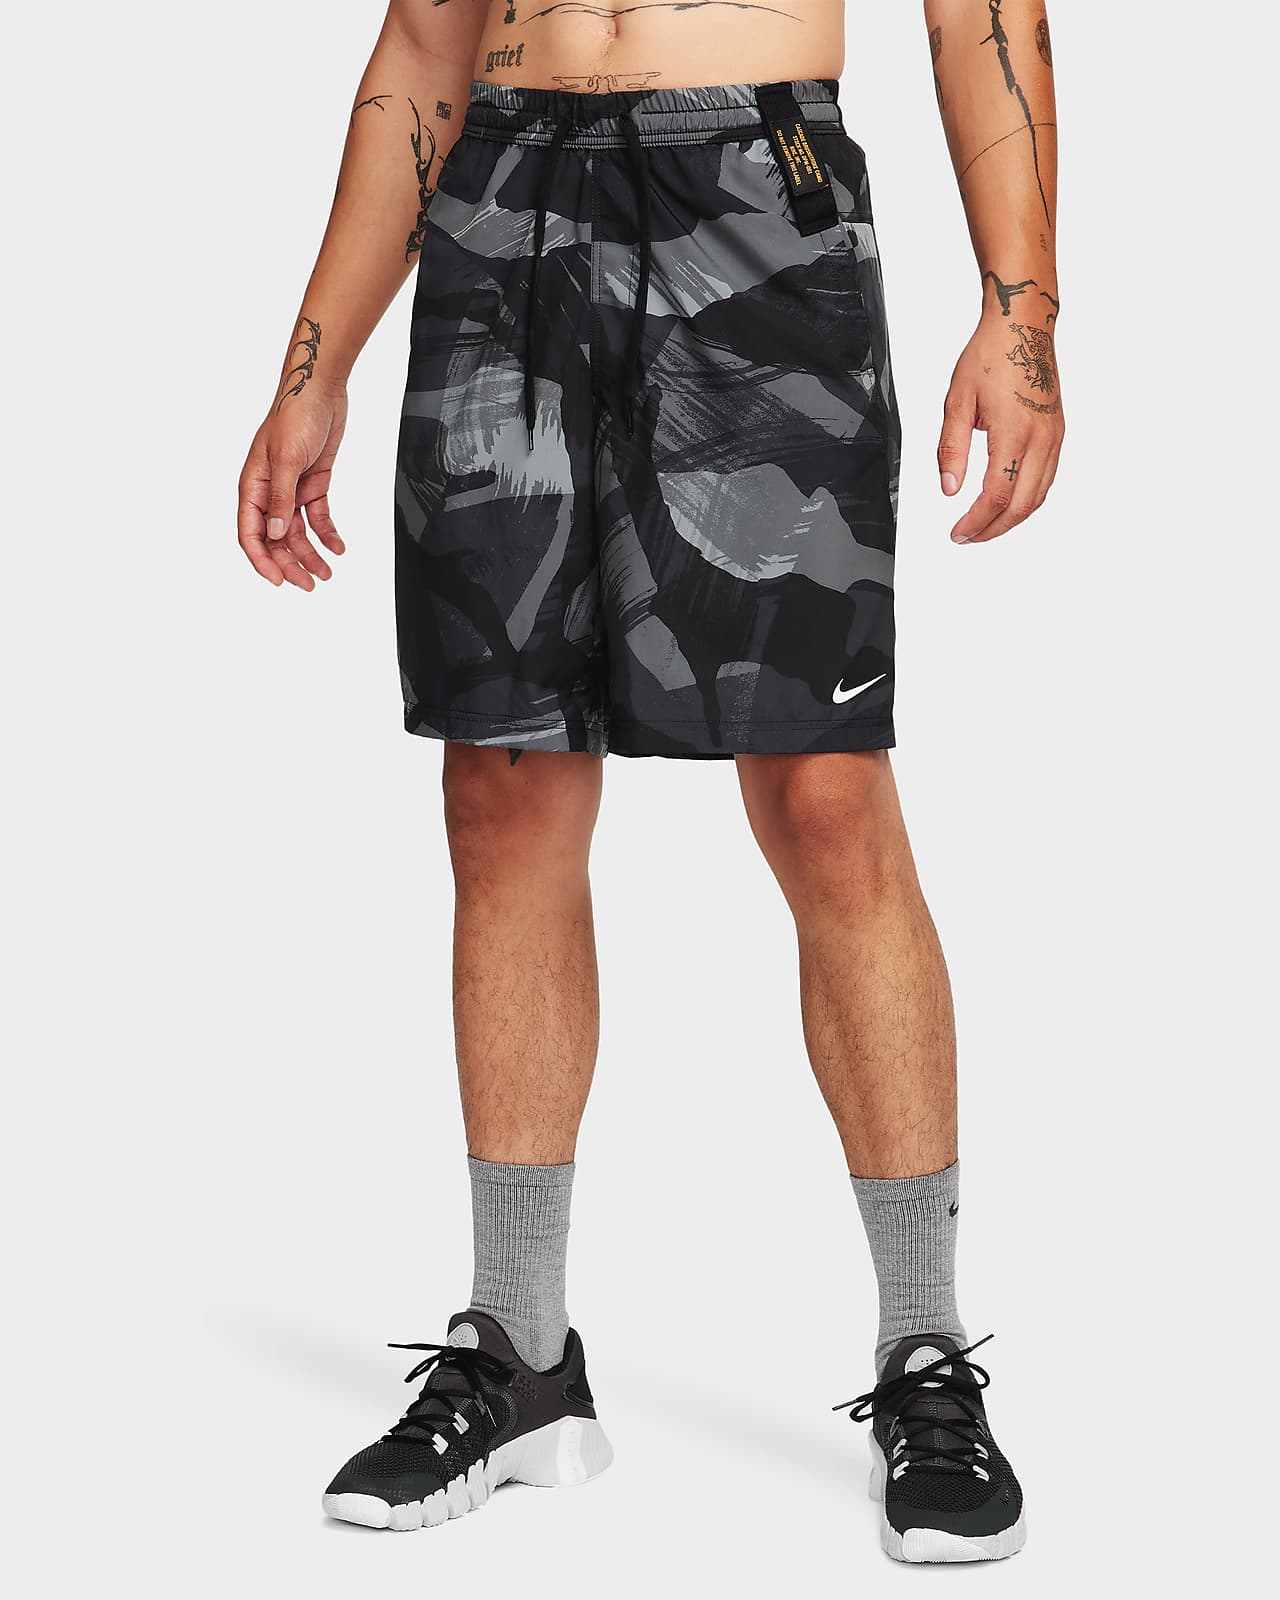 Alsidige Nike Form Dri-FIT-shorts (23 cm) uden for til mænd